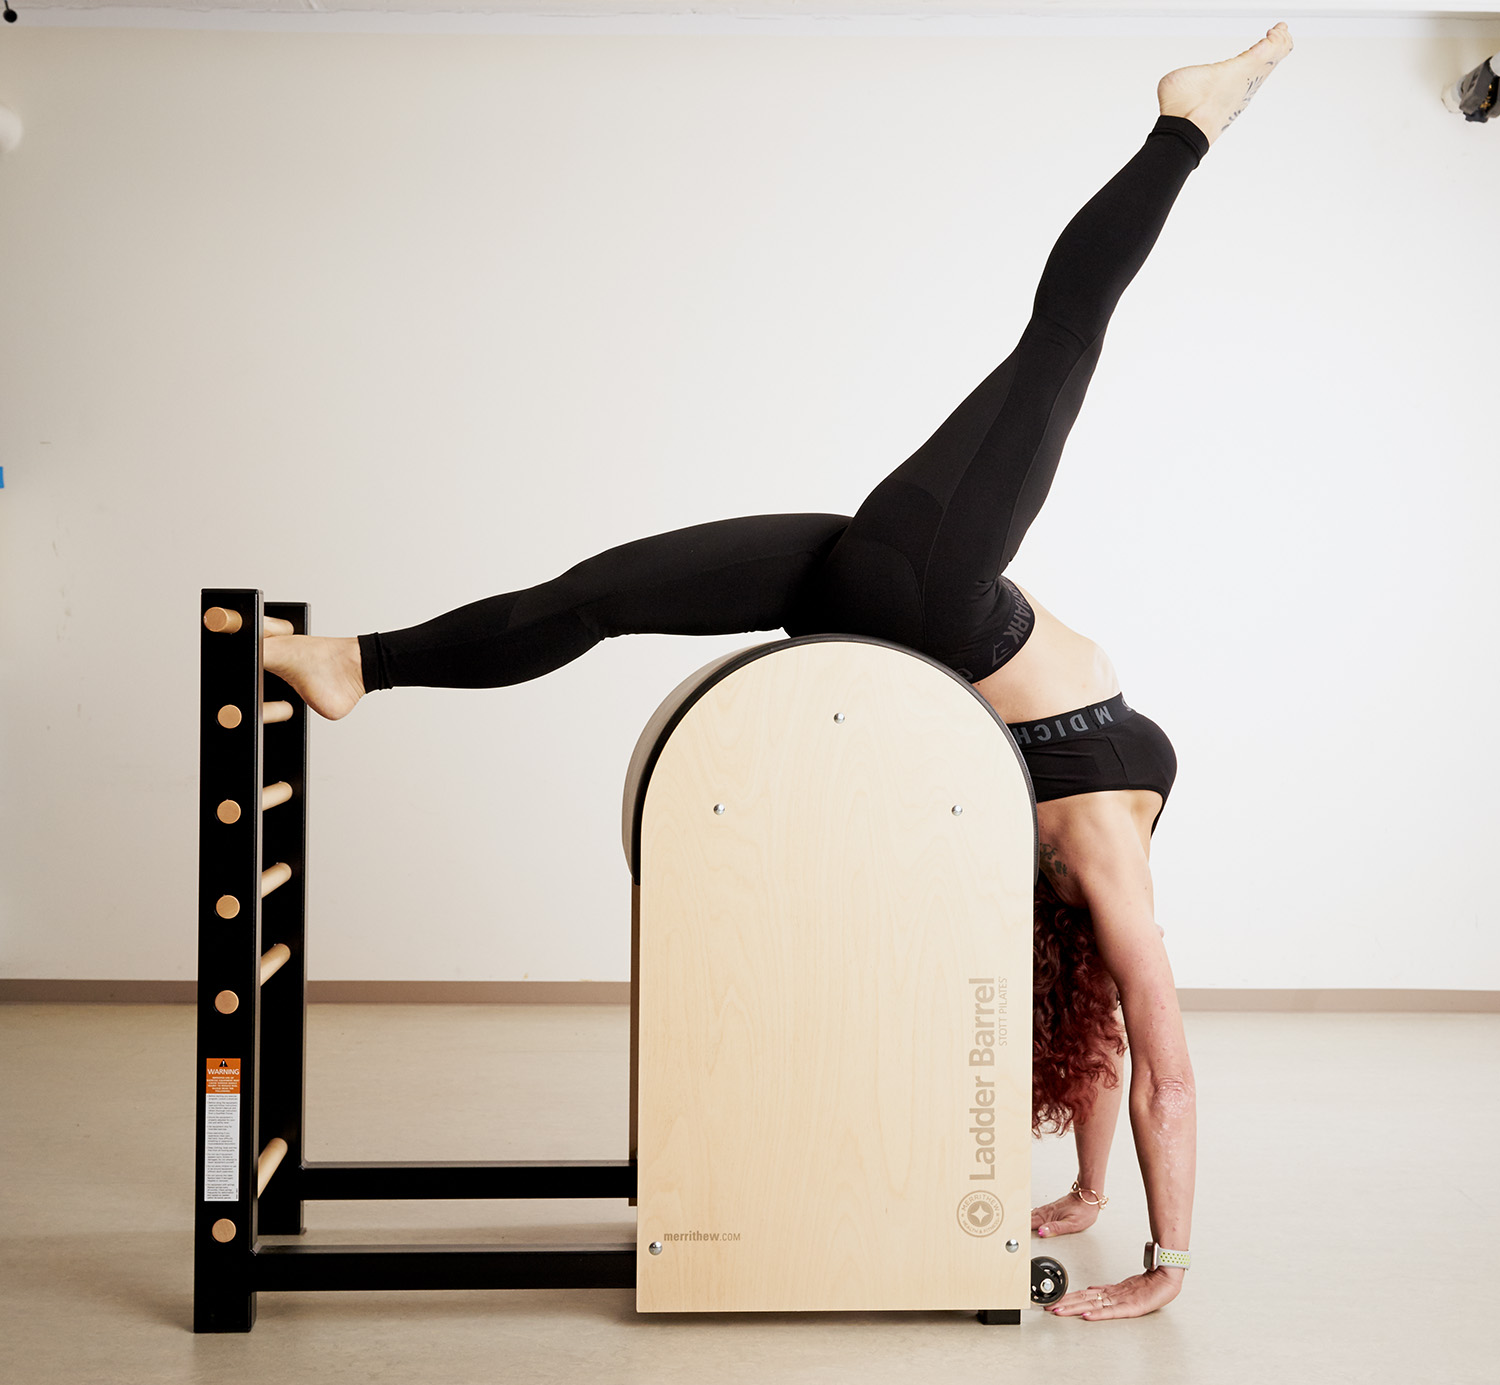 Mujer haciendo el pino en una máquina de pilates